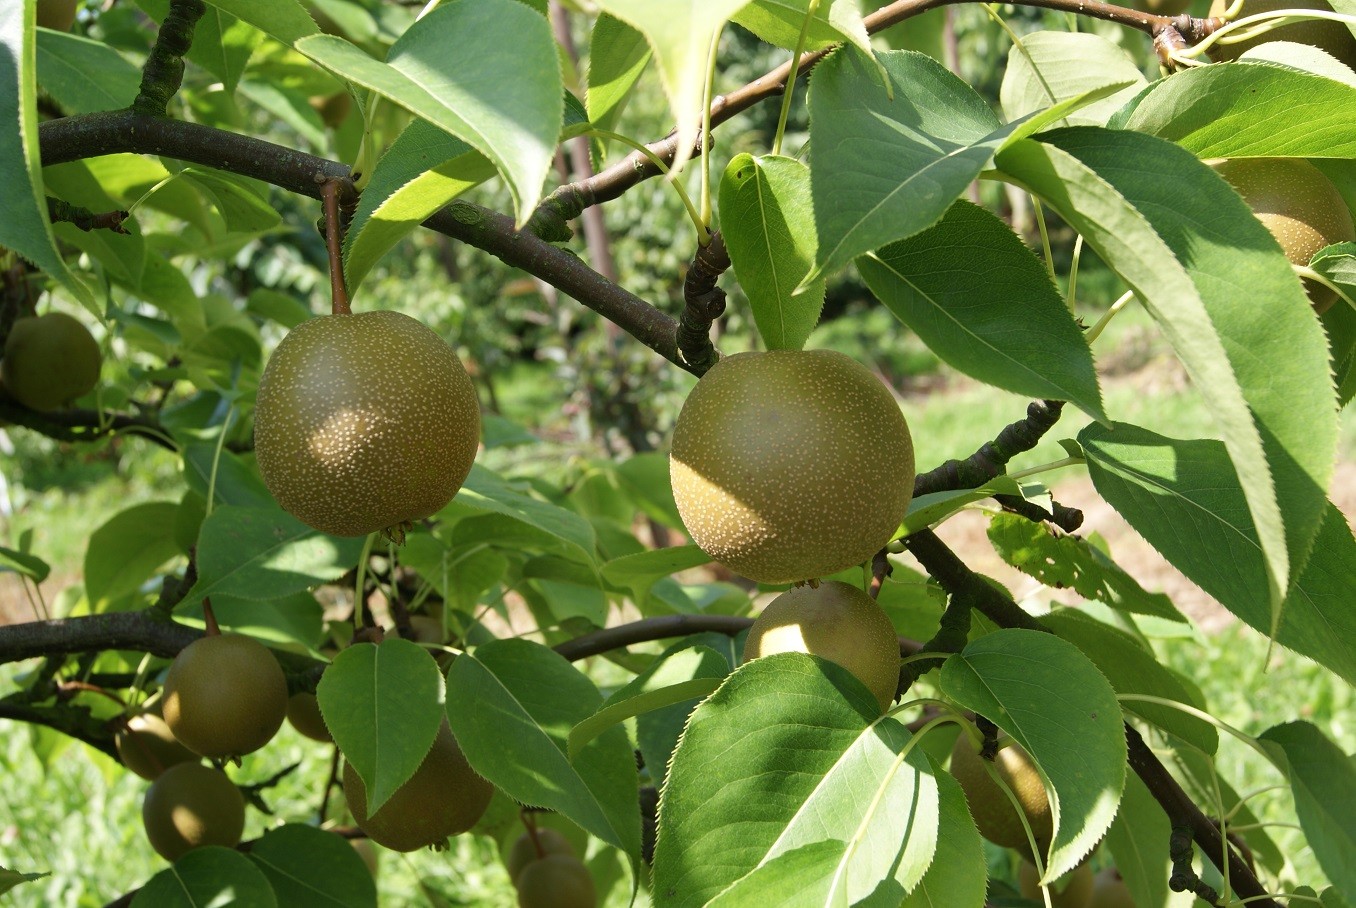 Olympic Nashi pear tree